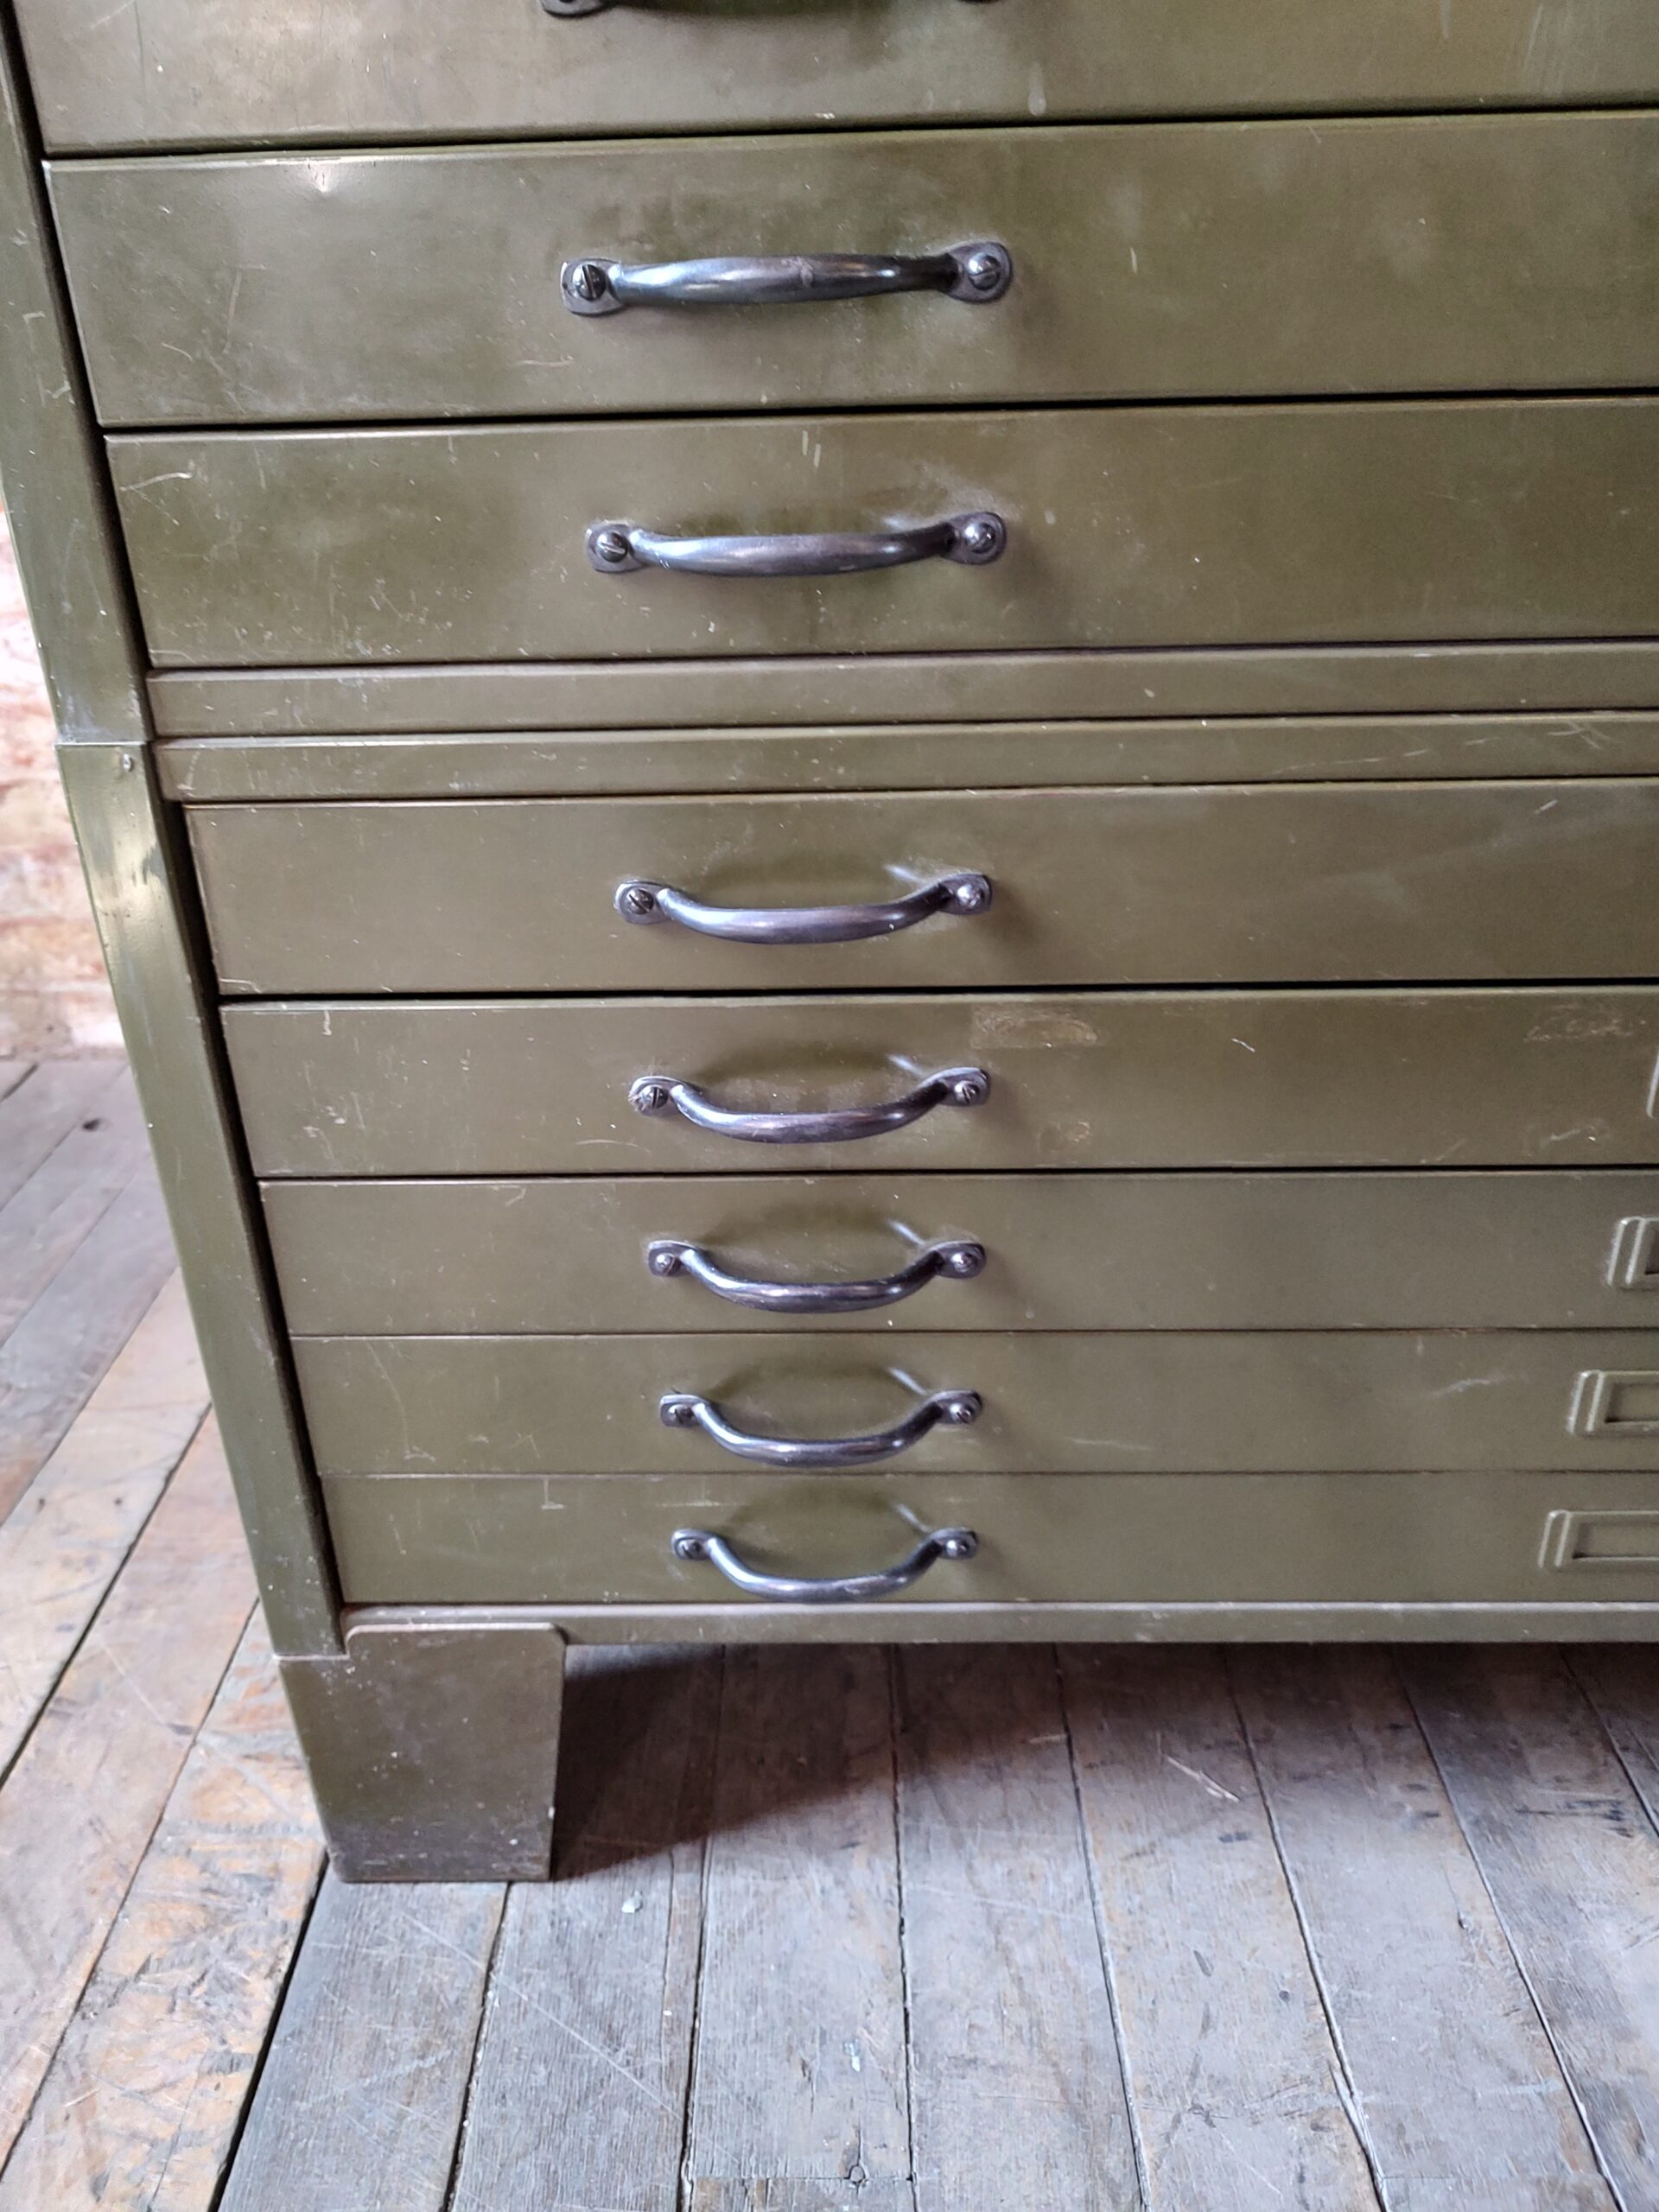 Vintage Flat File Draftsman's Cabinet - Vintage Industrial by Get Back, Inc